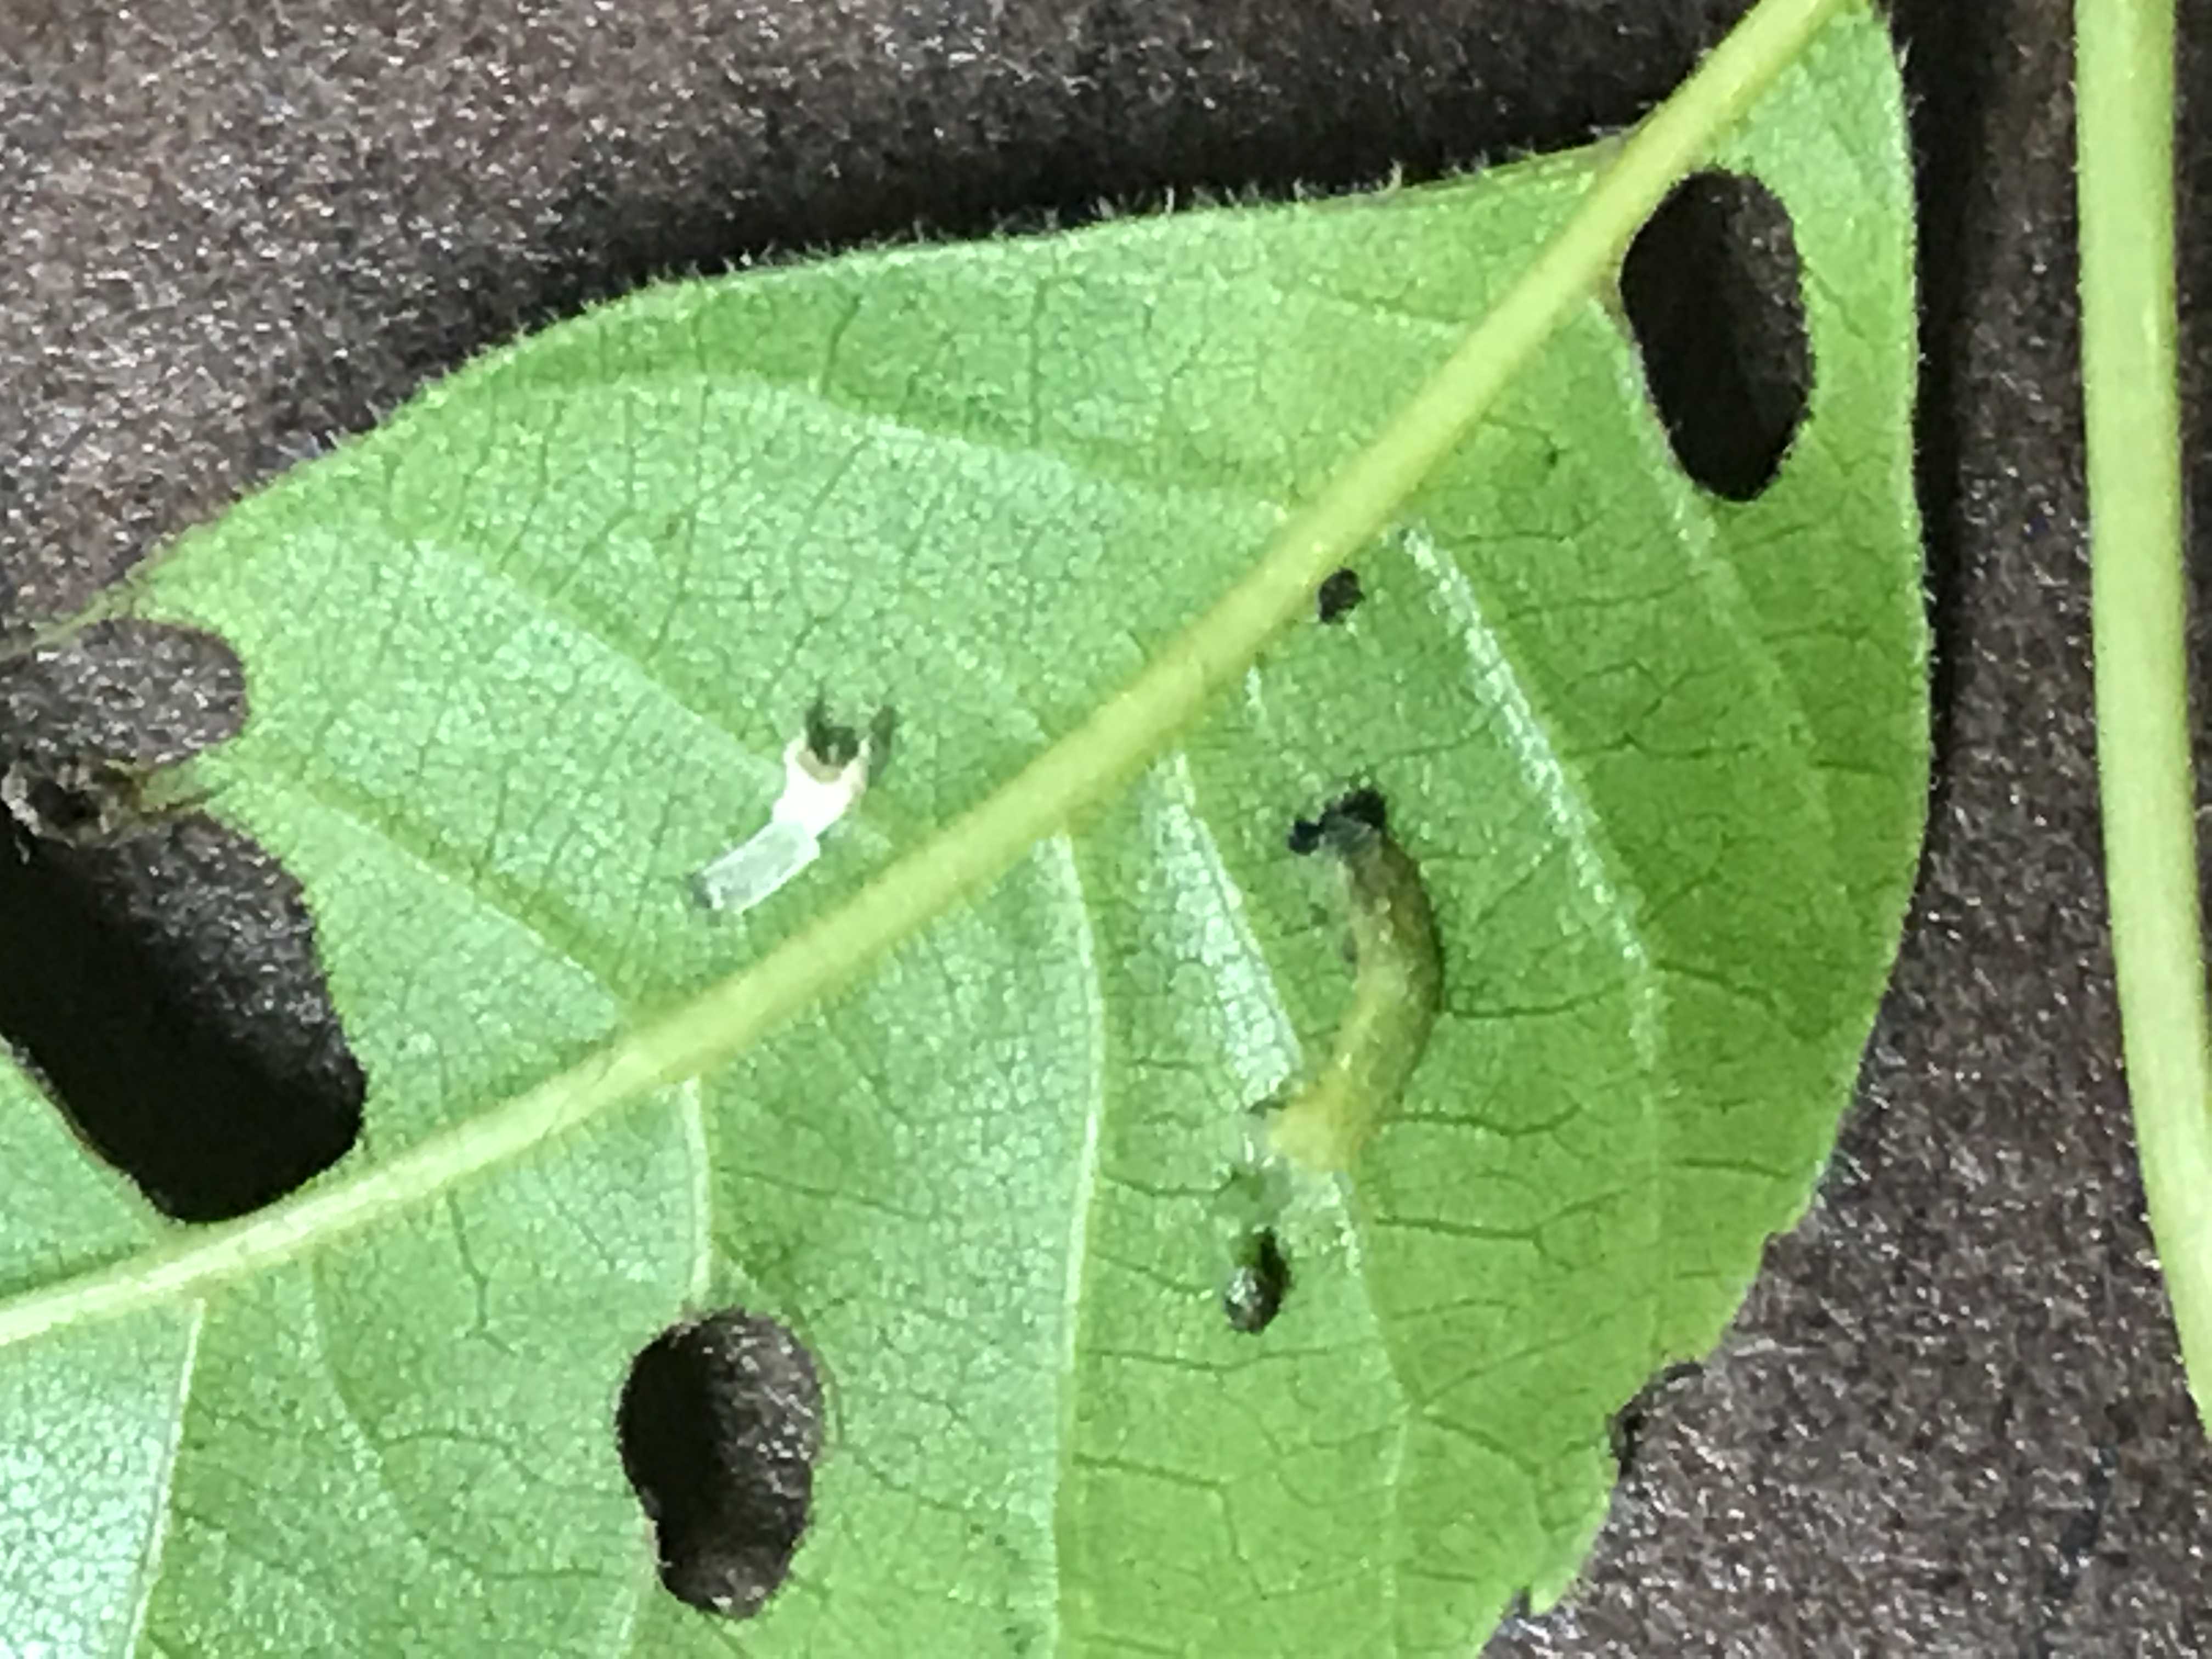 Sawfly feeding damage